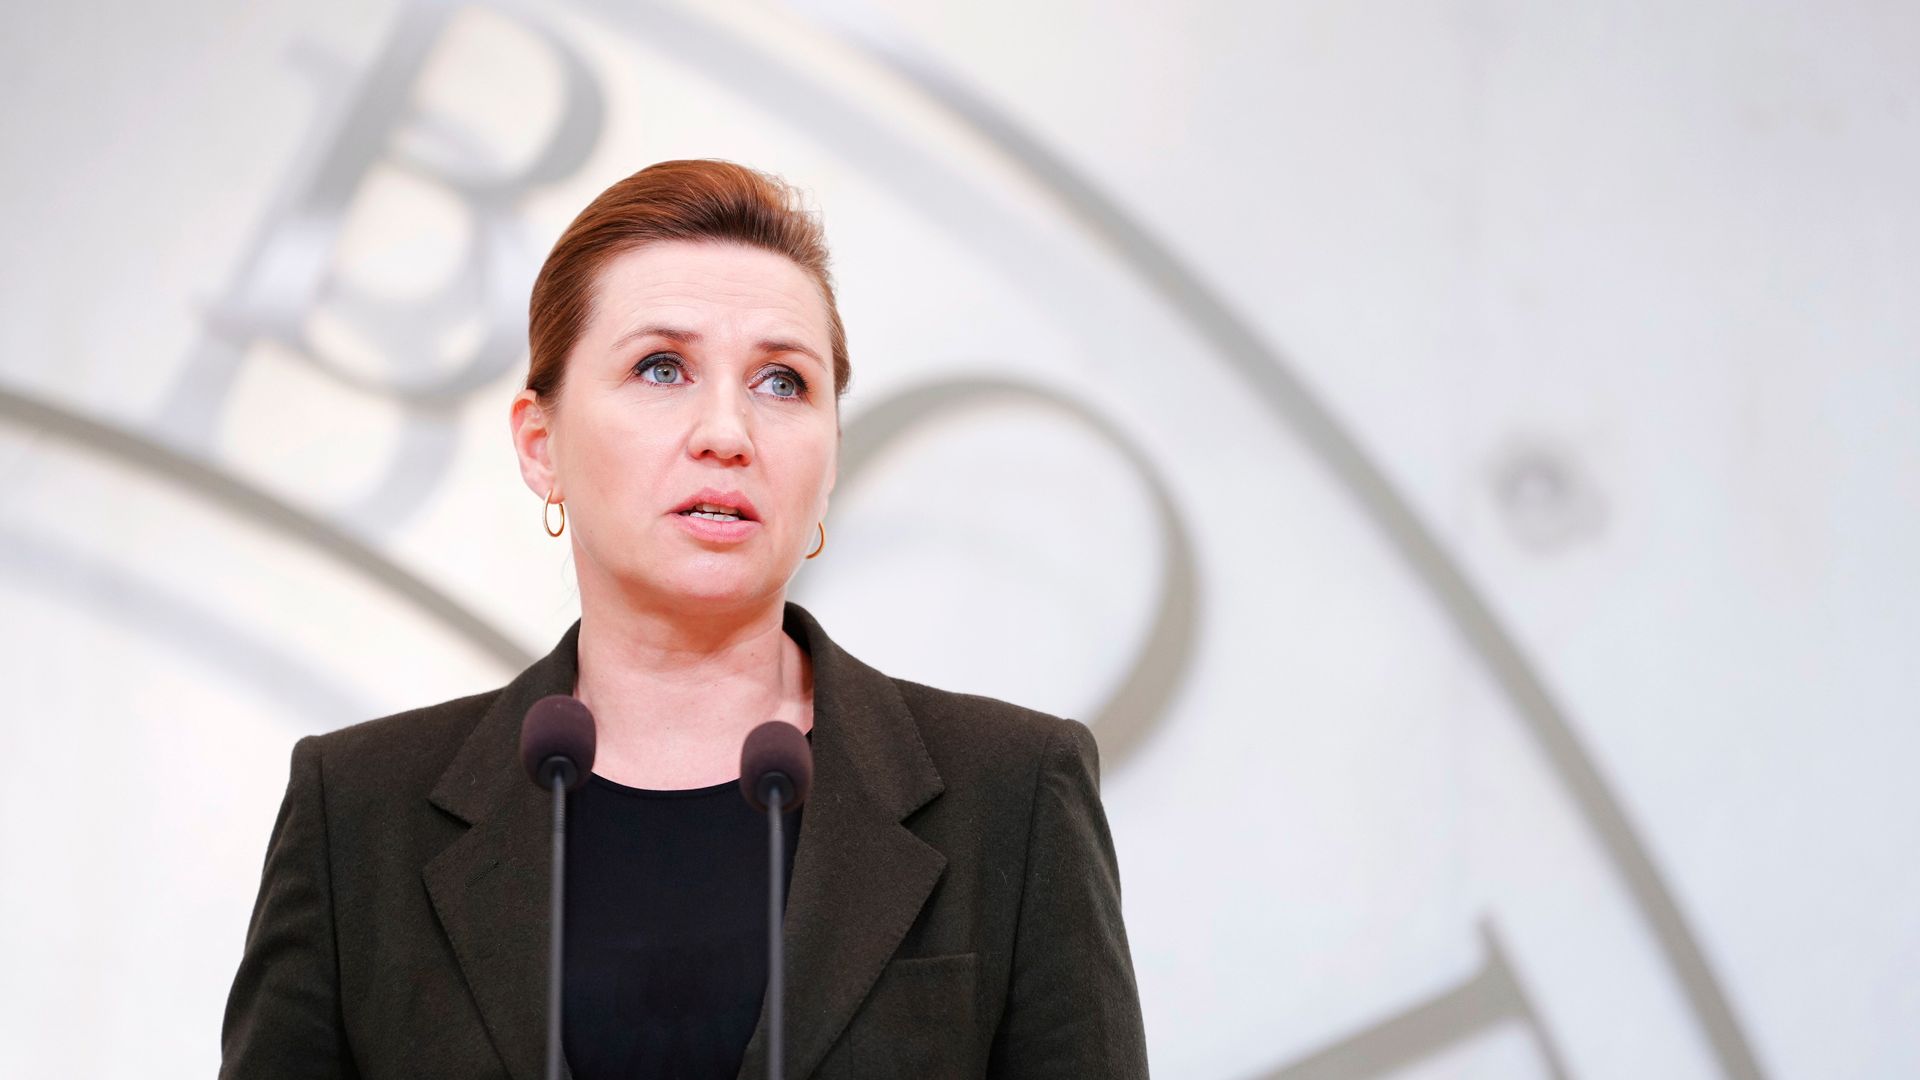 dänemark: regierungschefin mette frederiksen macht beleidigungen im internet öffentlich